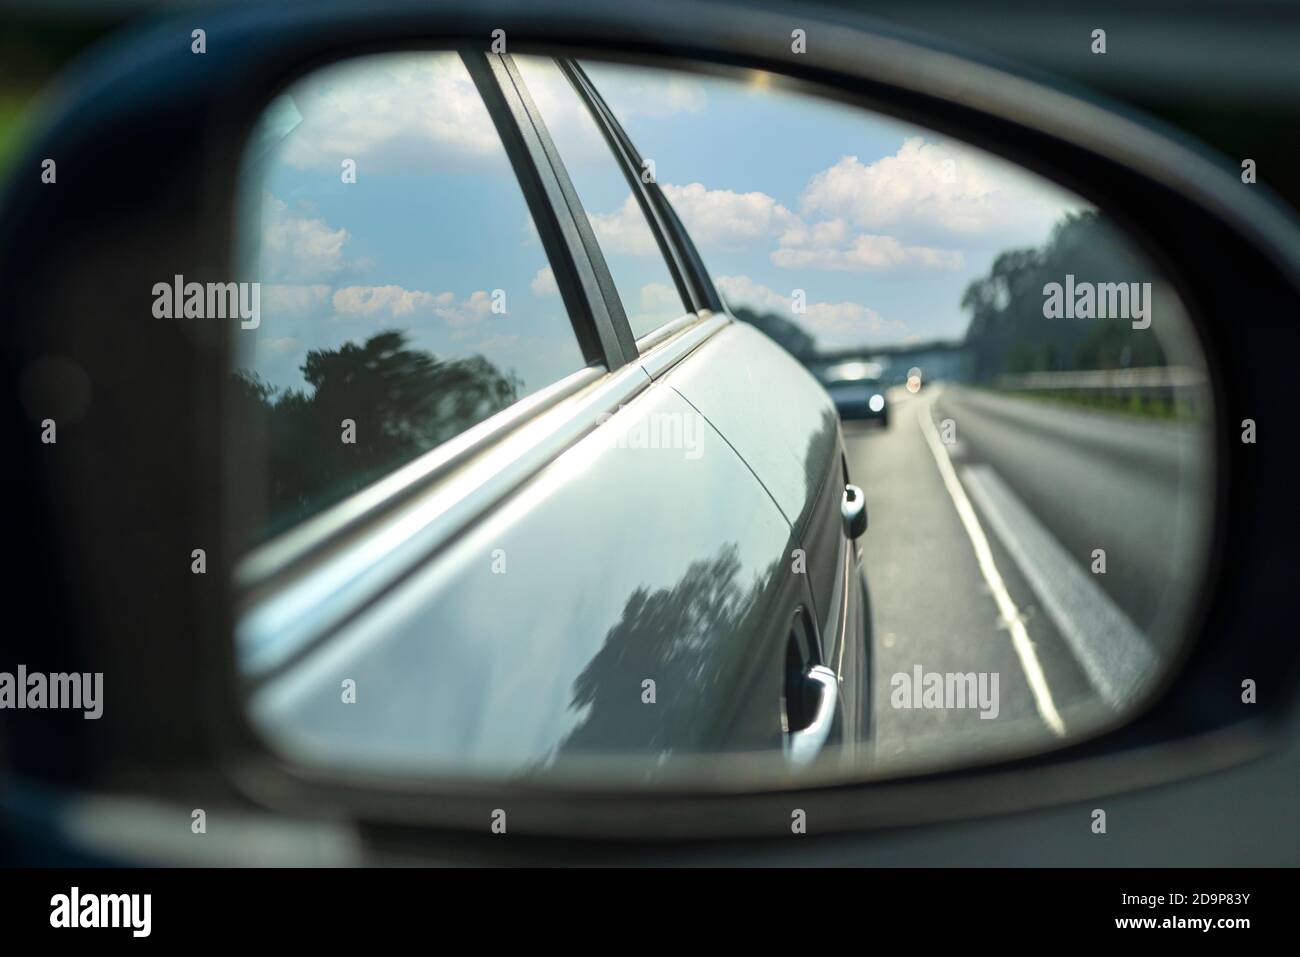 https://c8.alamy.com/compde/2d9p83y/spiegelung-im-seitenspiegel-eines-autos-das-auf-der-autobahn-fahrt-sichtbares-auto-in-der-spiegelung-2d9p83y.jpg